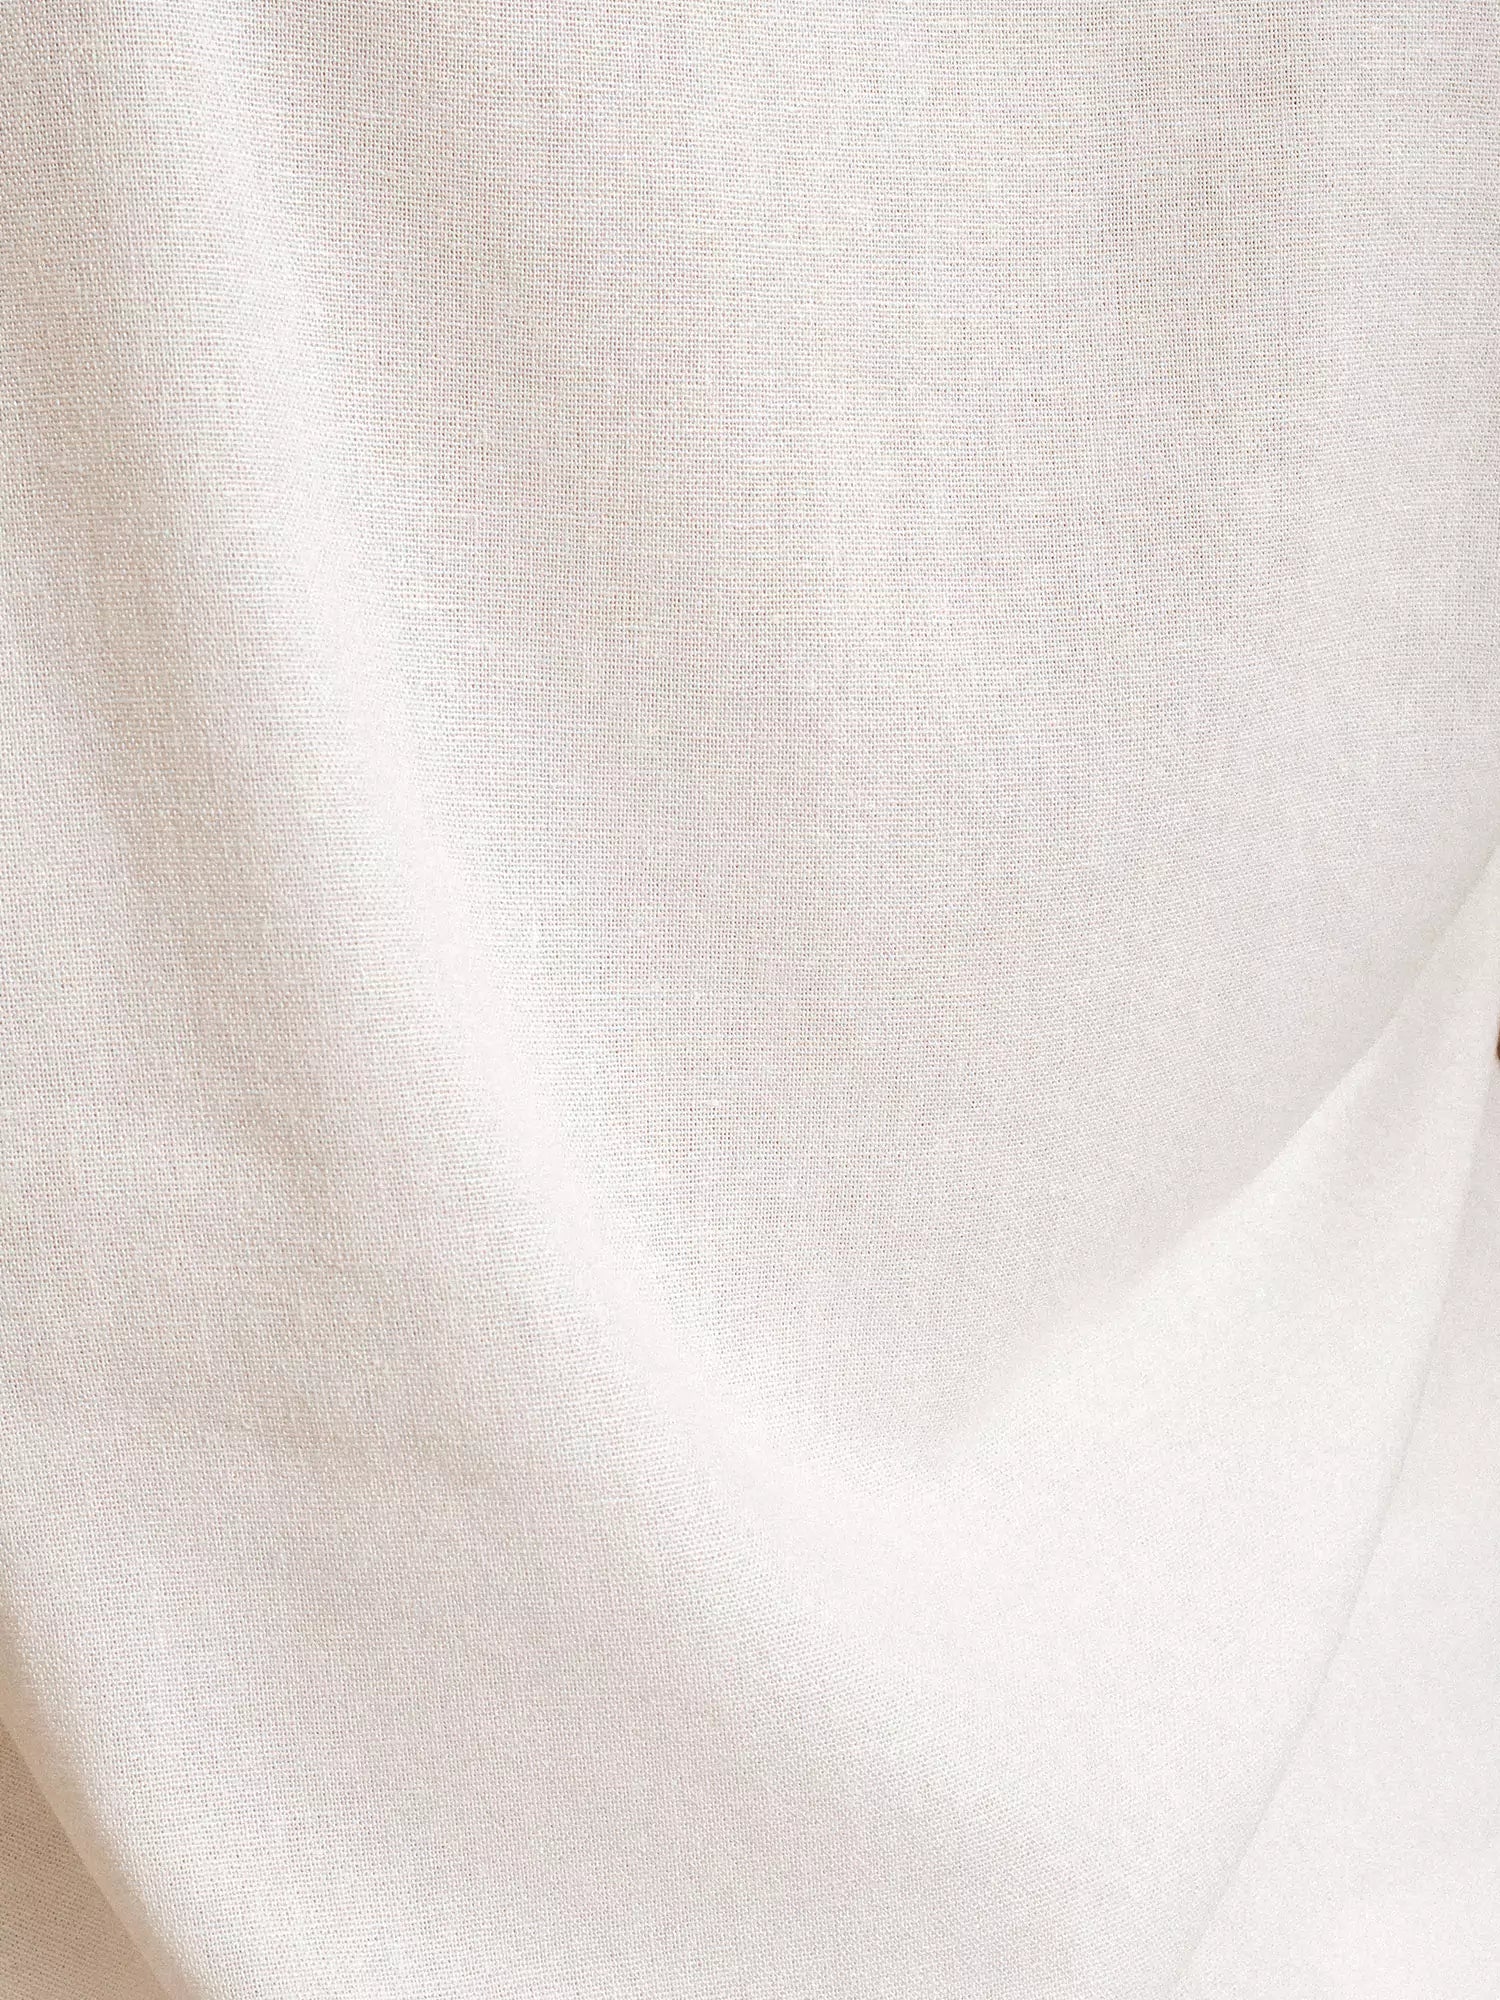 Shorts Alfaiataria Boxer de Linho e Viscose FSC™ Branco Off White. Compre online moda sustentável e atemporal na Minimadeia. Roupas femininas estilosas, básicas e sustentáveis. Foto produto 07